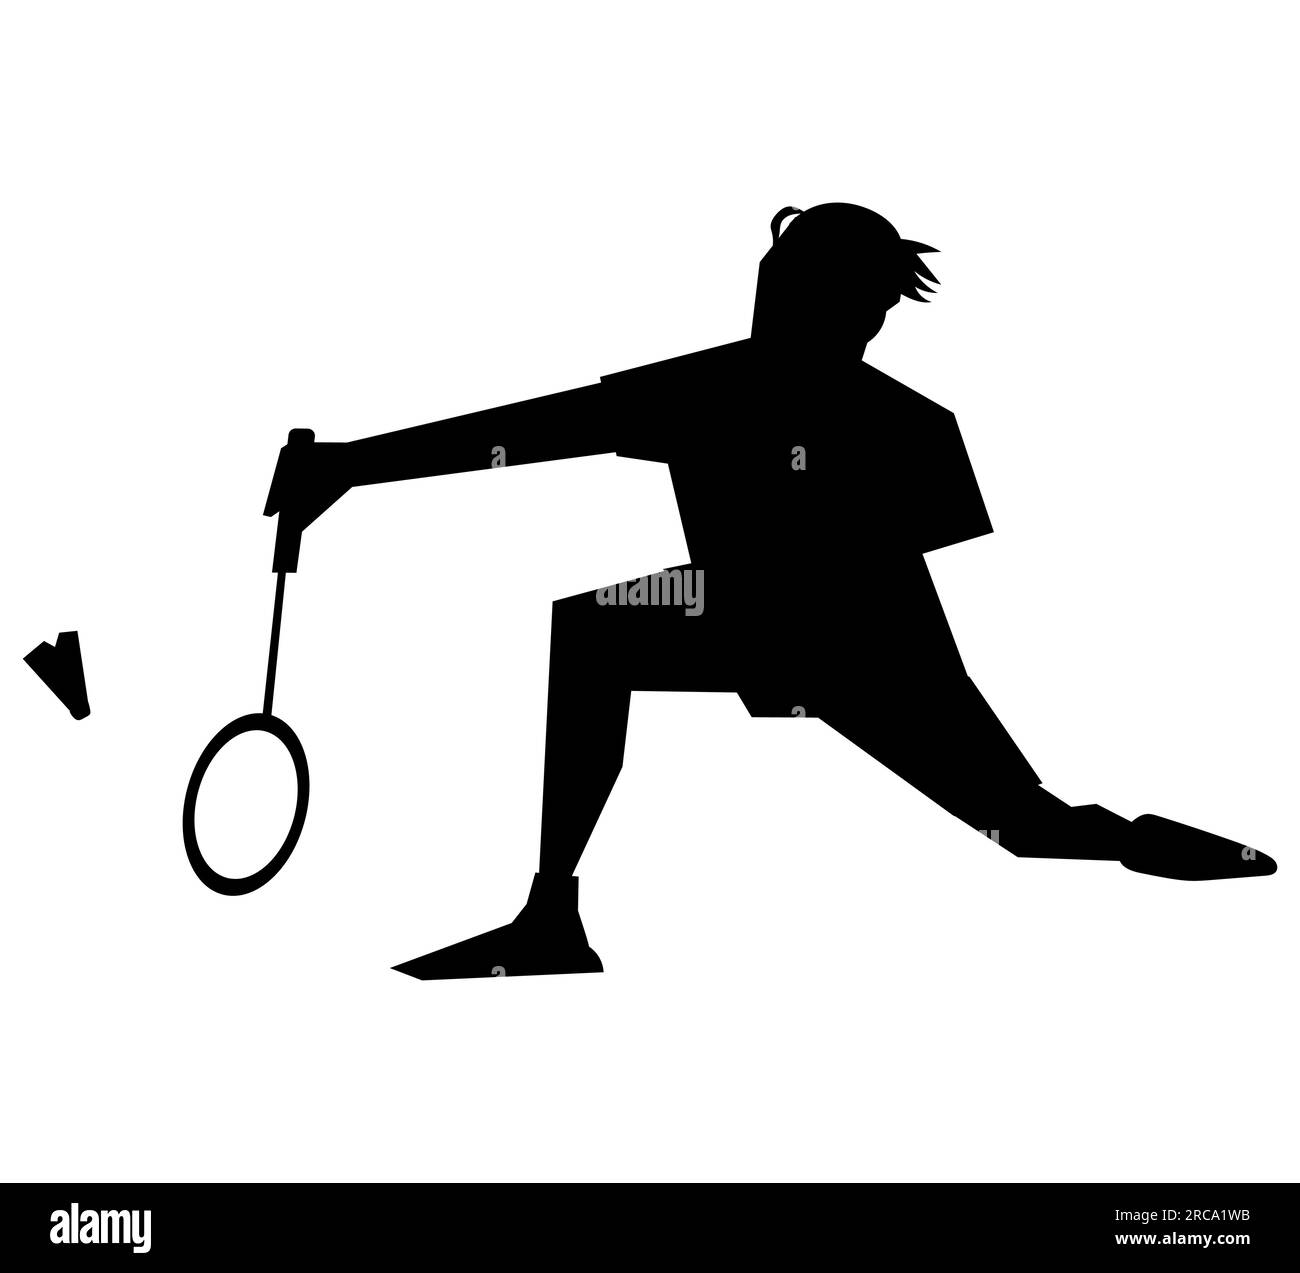 Schwarze Silhouette eines professionellen Badminton-Spielers, der sich dem Shuttle nähert, um einen kräftigen Schuss zu machen, Vektordarstellung isoliert auf Weiß Stock Vektor